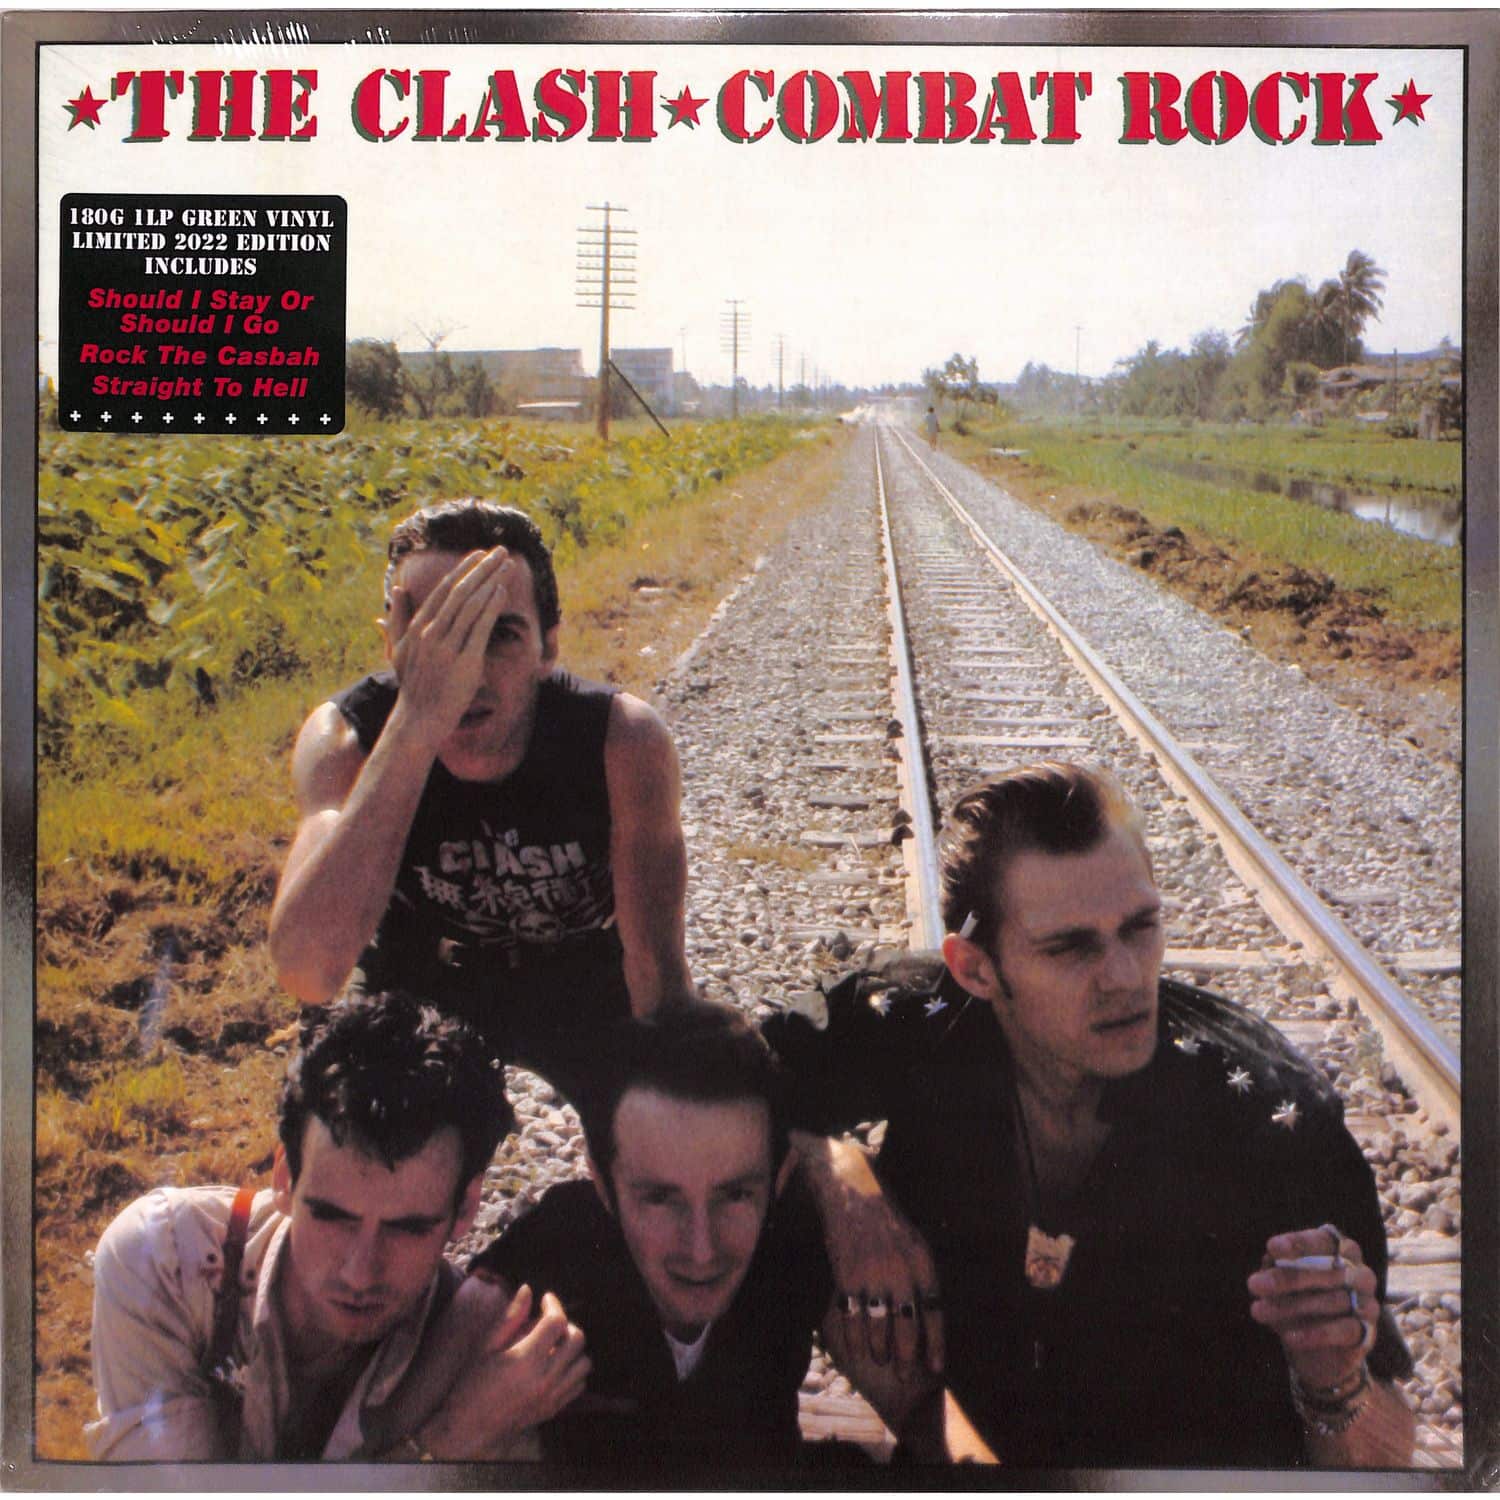 The Clash - COMBAT ROCK 